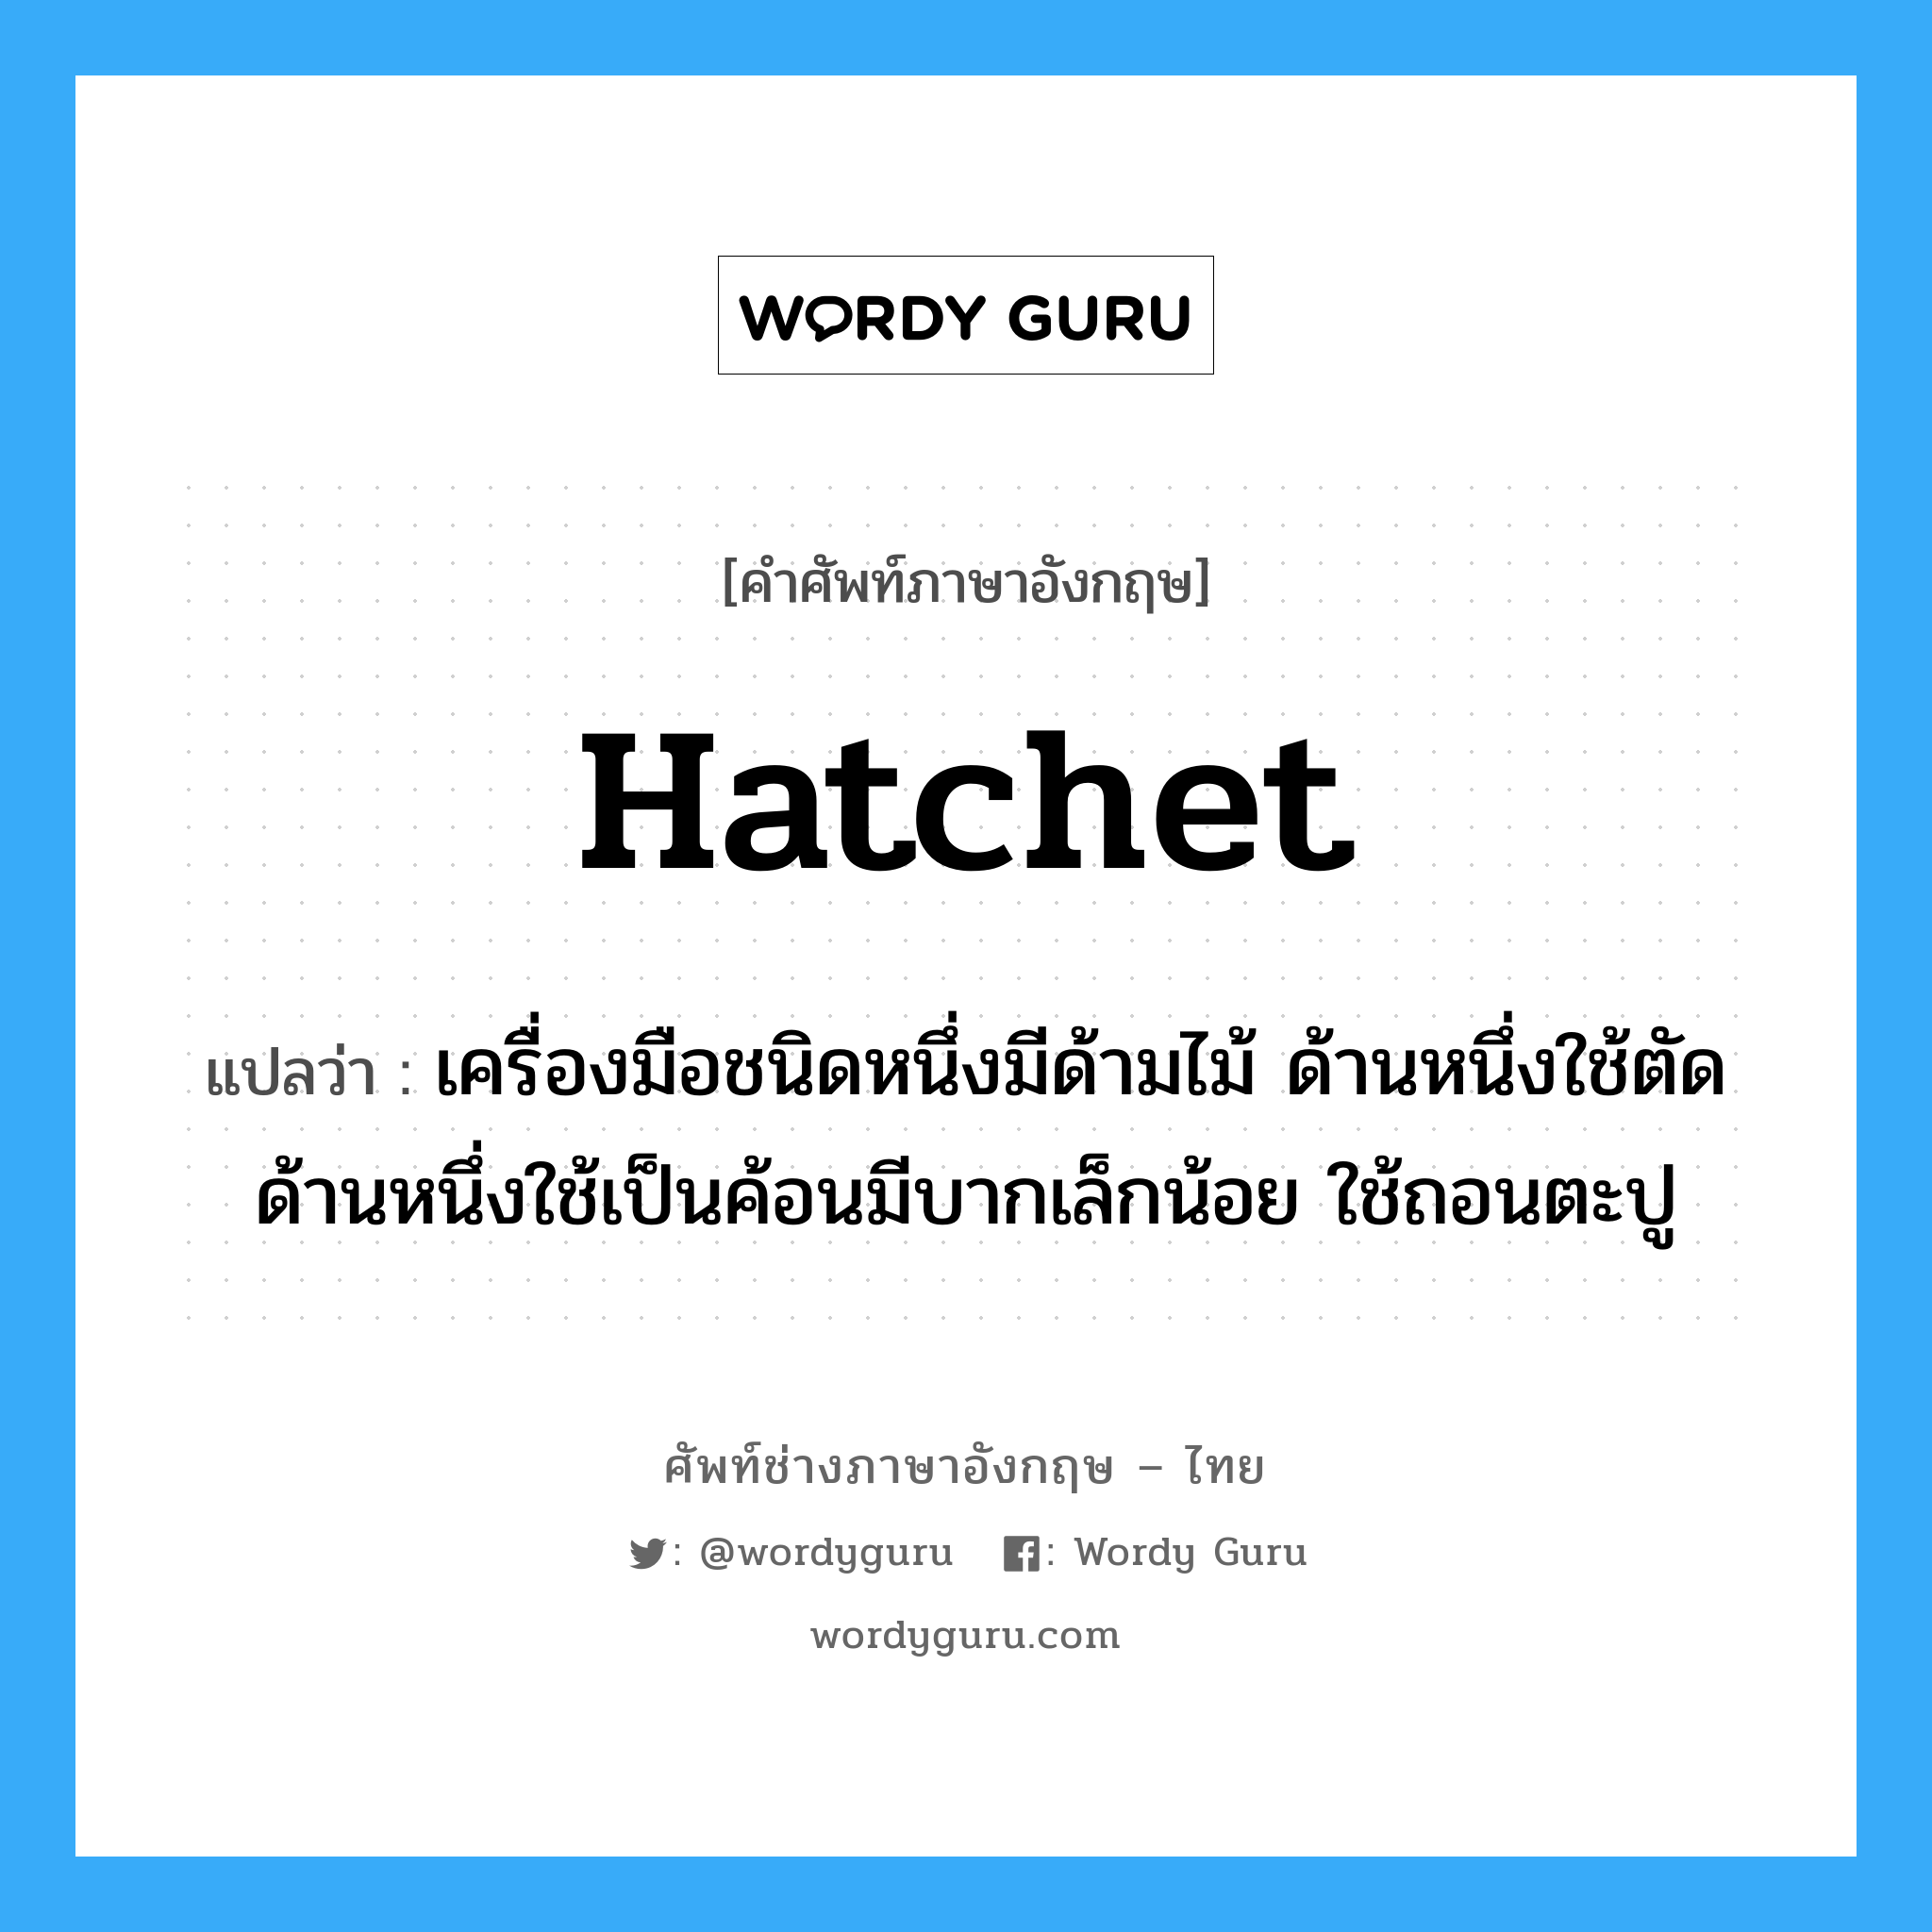 hatchet แปลว่า?, คำศัพท์ช่างภาษาอังกฤษ - ไทย hatchet คำศัพท์ภาษาอังกฤษ hatchet แปลว่า เครื่องมือชนิดหนึ่งมีด้ามไม้ ด้านหนึ่งใช้ตัด ด้านหนึ่งใช้เป็นค้อนมีบากเล็กน้อย ใช้ถอนตะปู